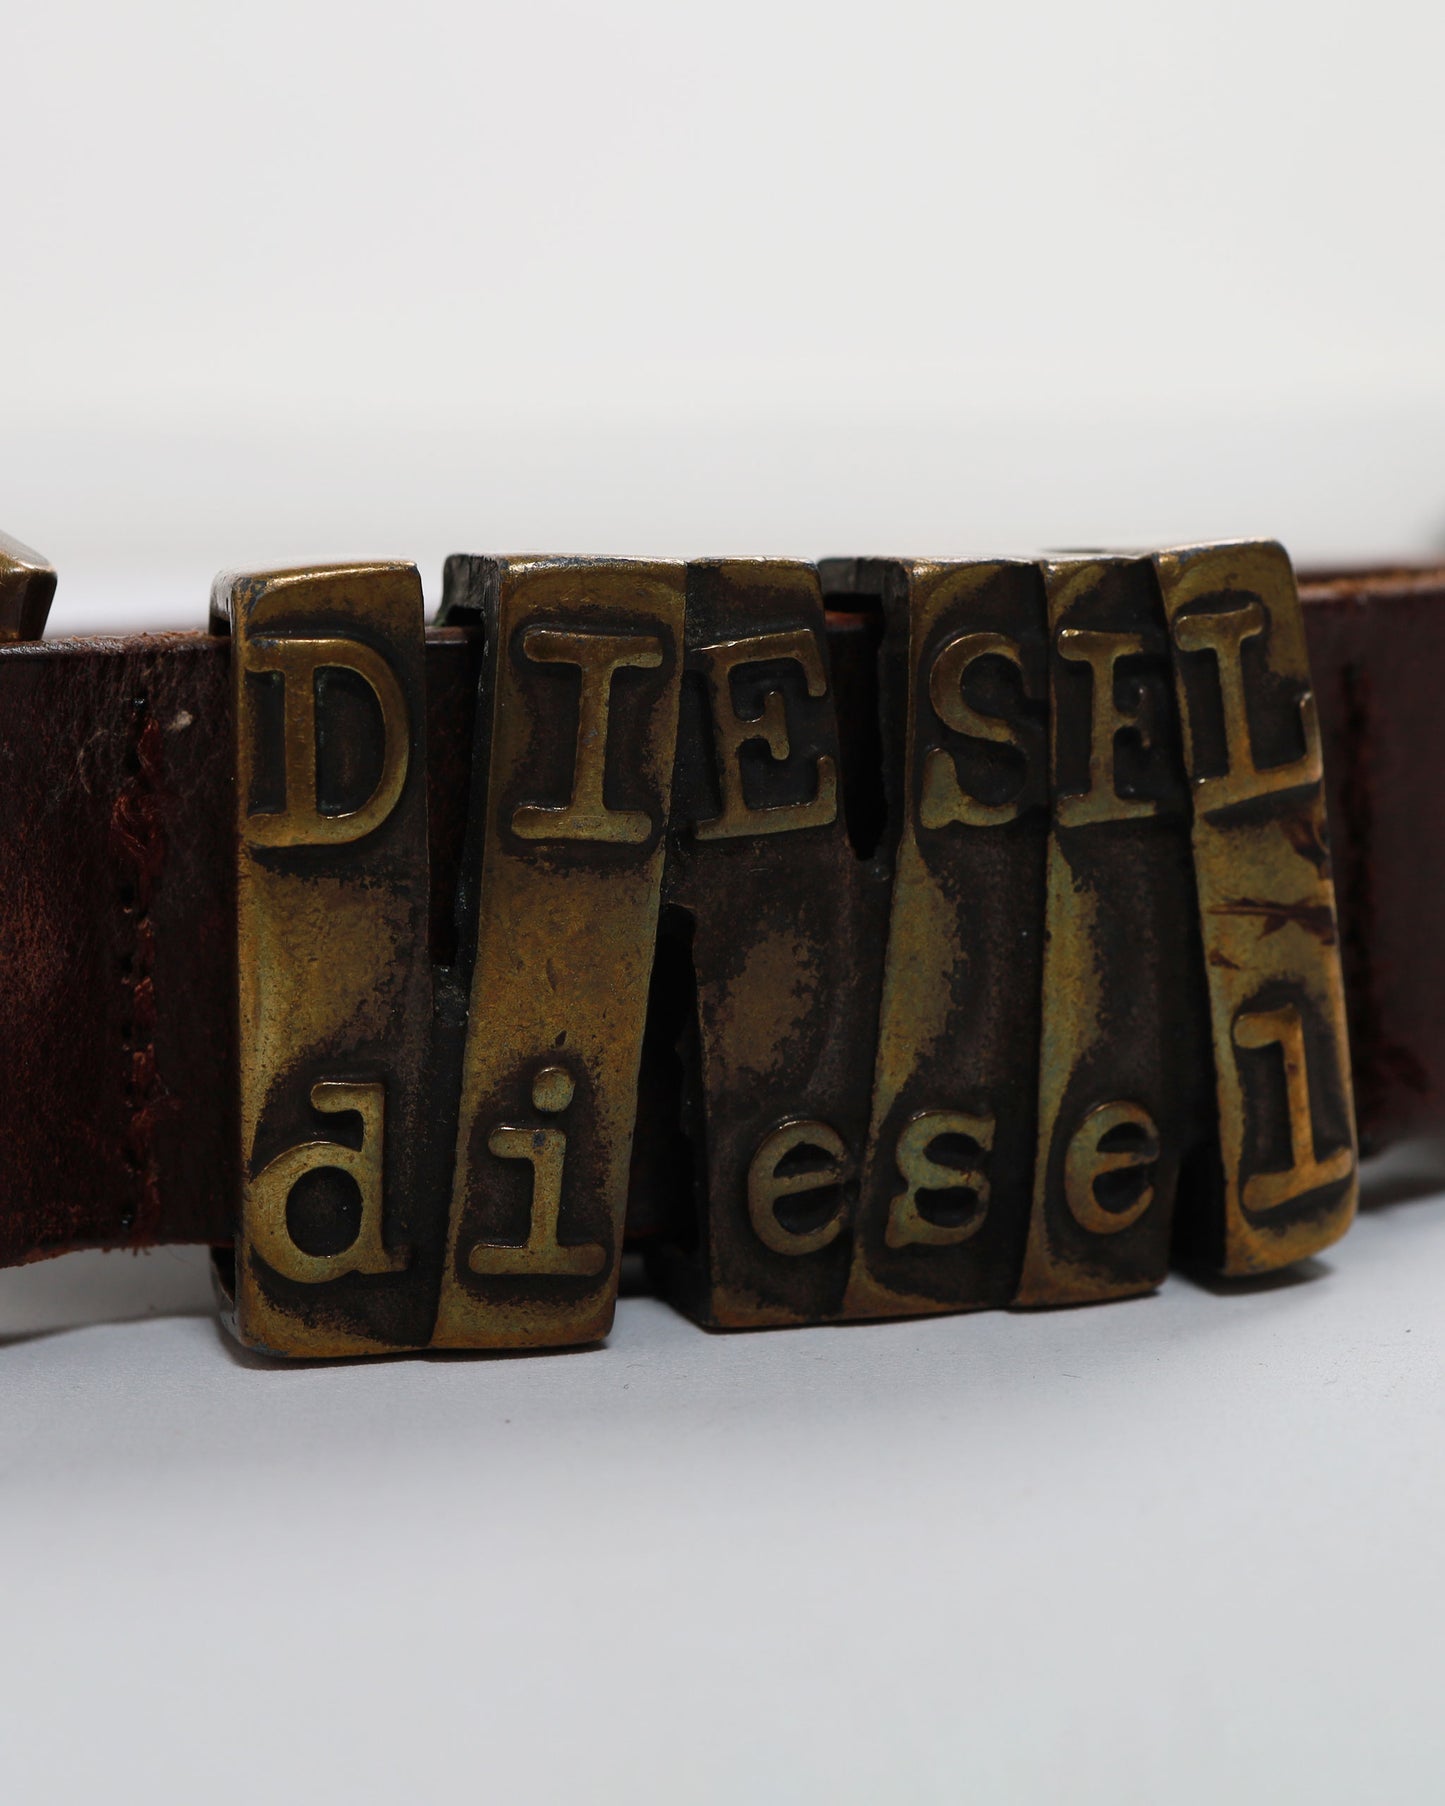 Cintura Diesel in pelle con fibbia in metallo e doppio logo Diesel